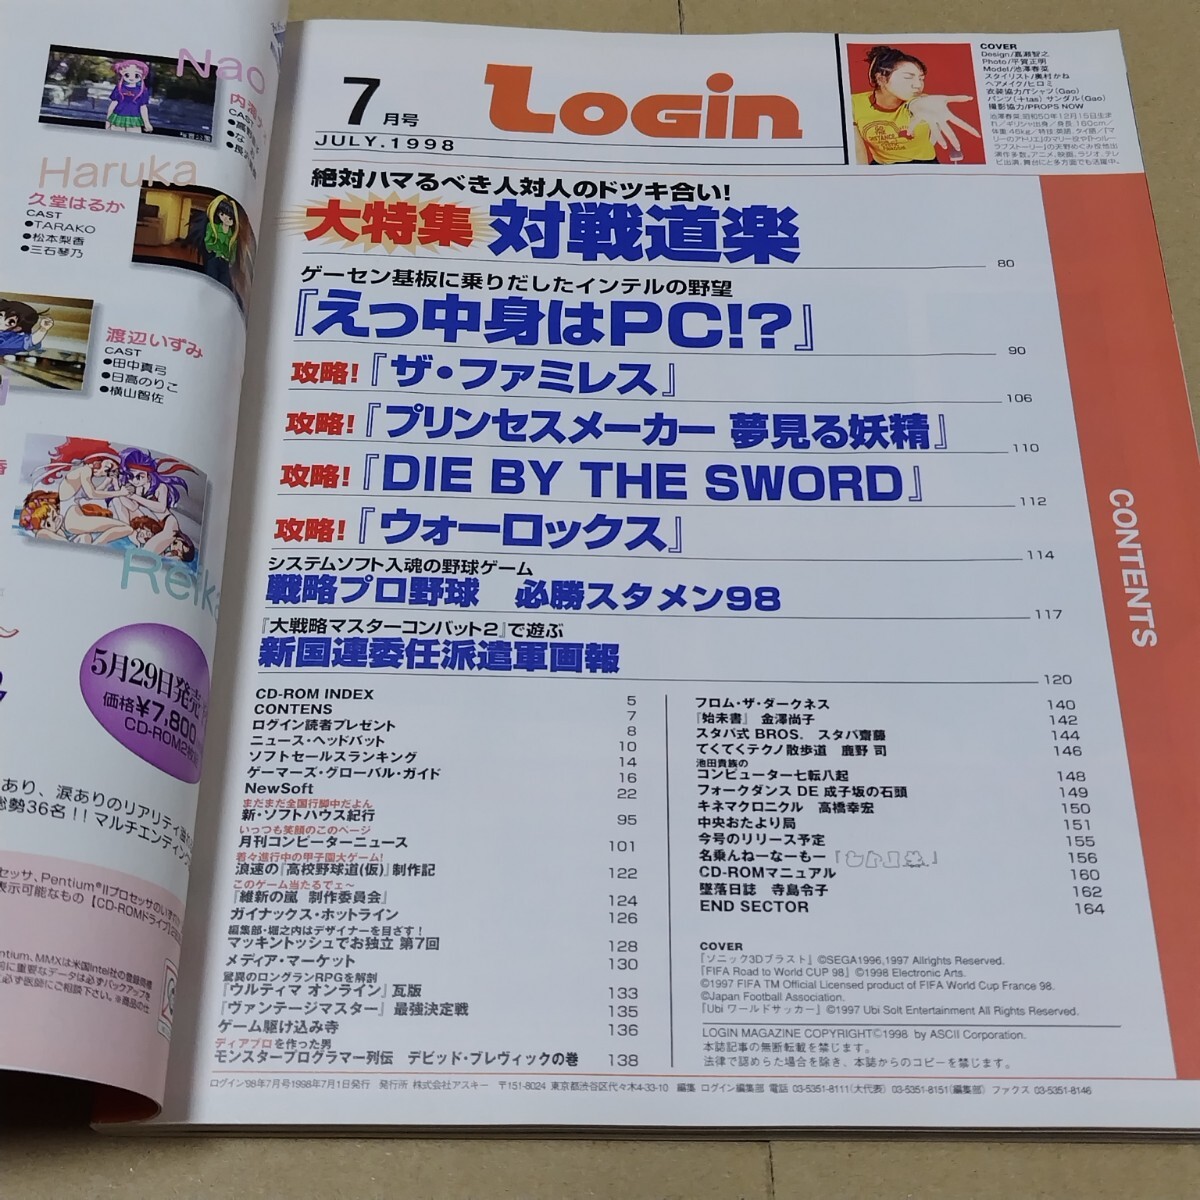 ログイン　1998年7月号 LOGIN 付録CD-ROM(未開封)、別冊付録あり_画像6